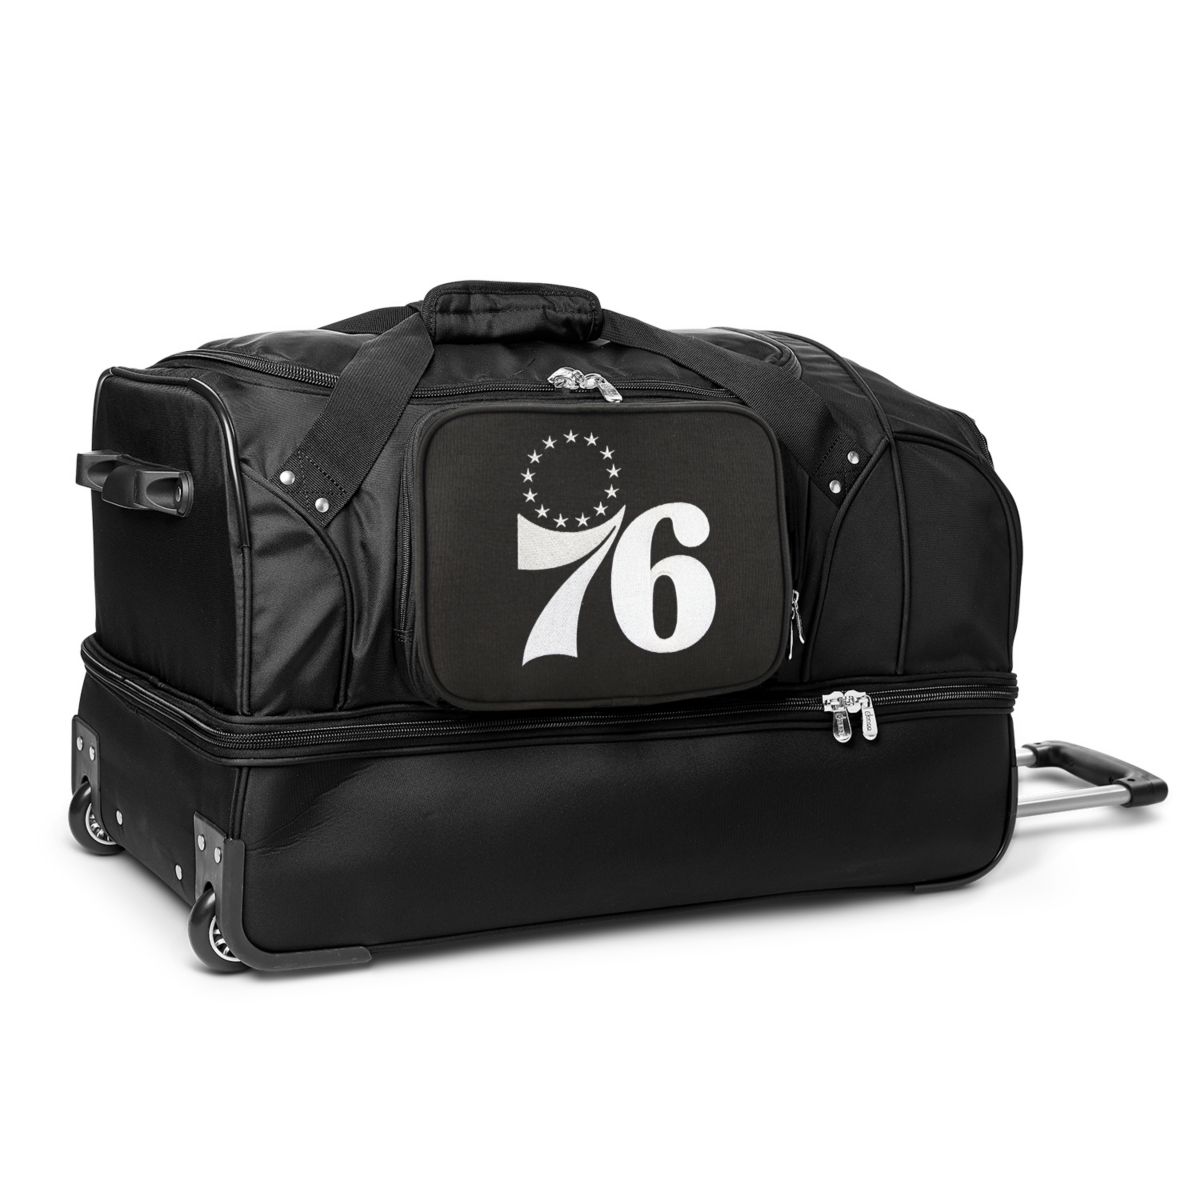 27-дюймовая спортивная сумка Philadelphia 76ers на колесиках Denco